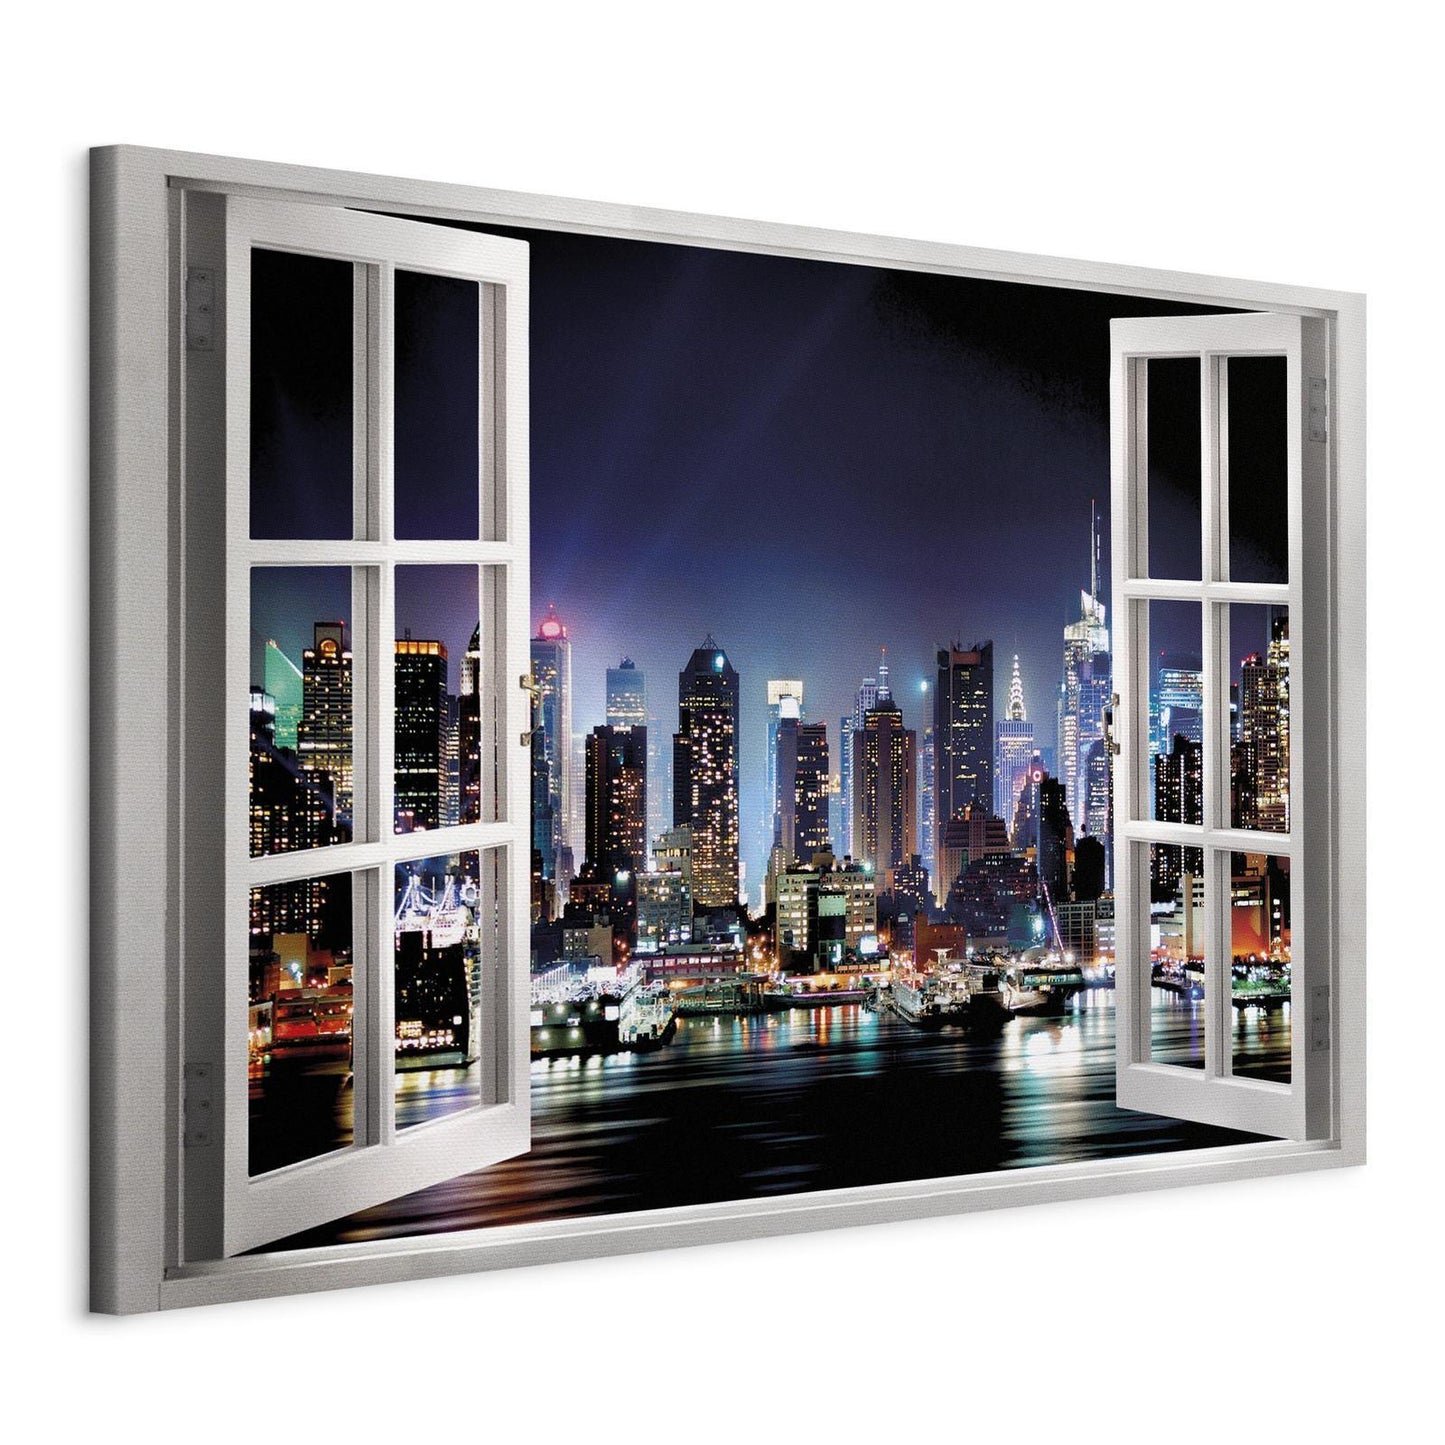 Schilderij - Window: View of New York